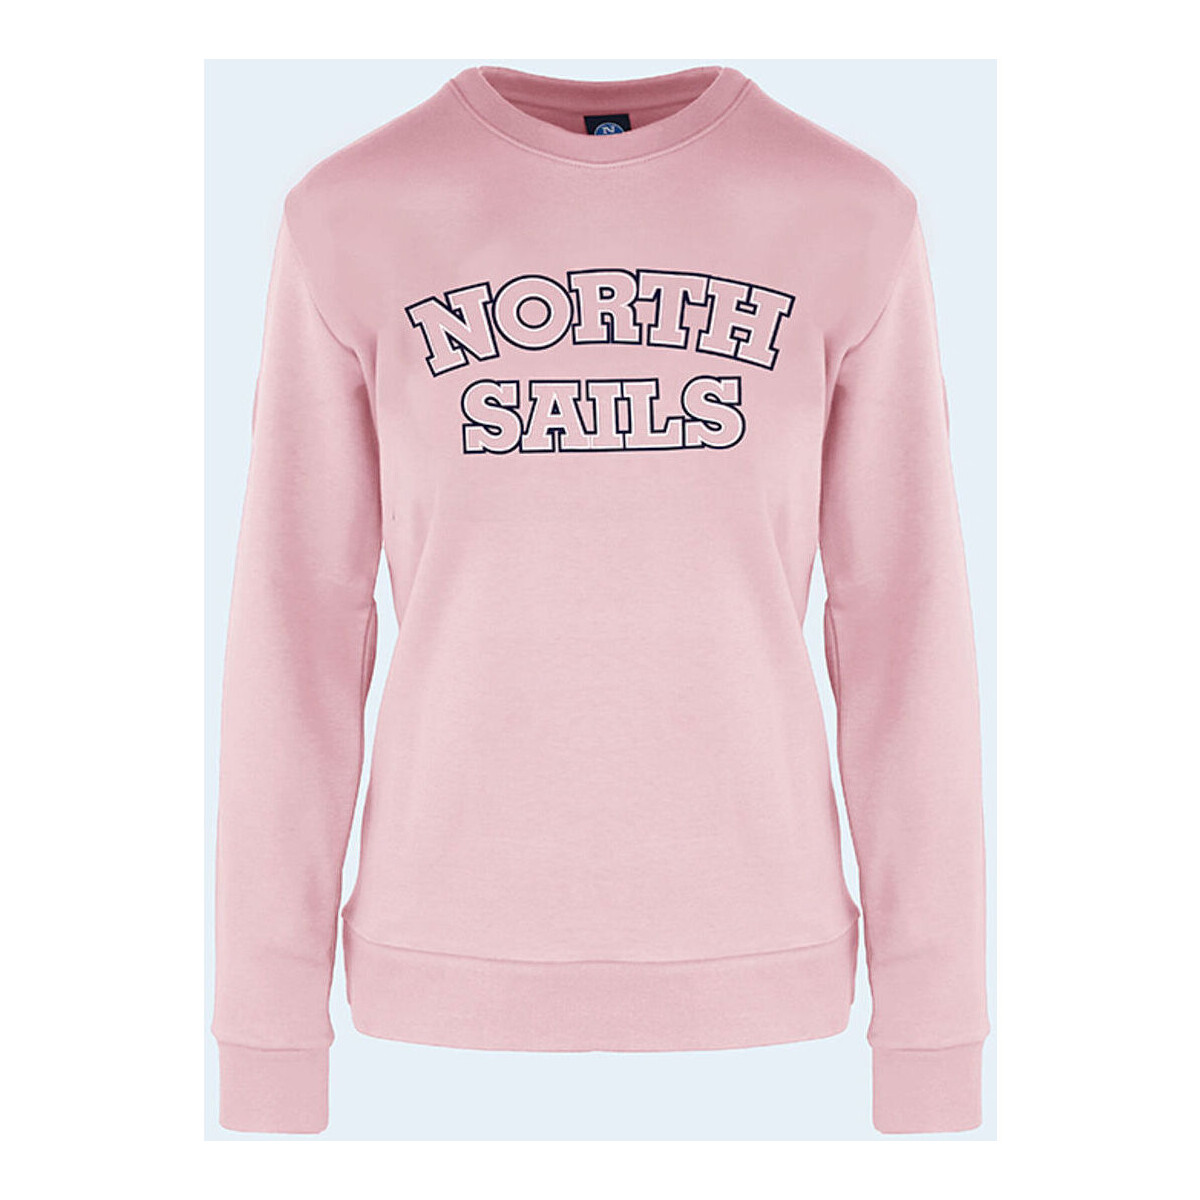 Textil Mulher Sweats North Sails - 9024210 Rosa